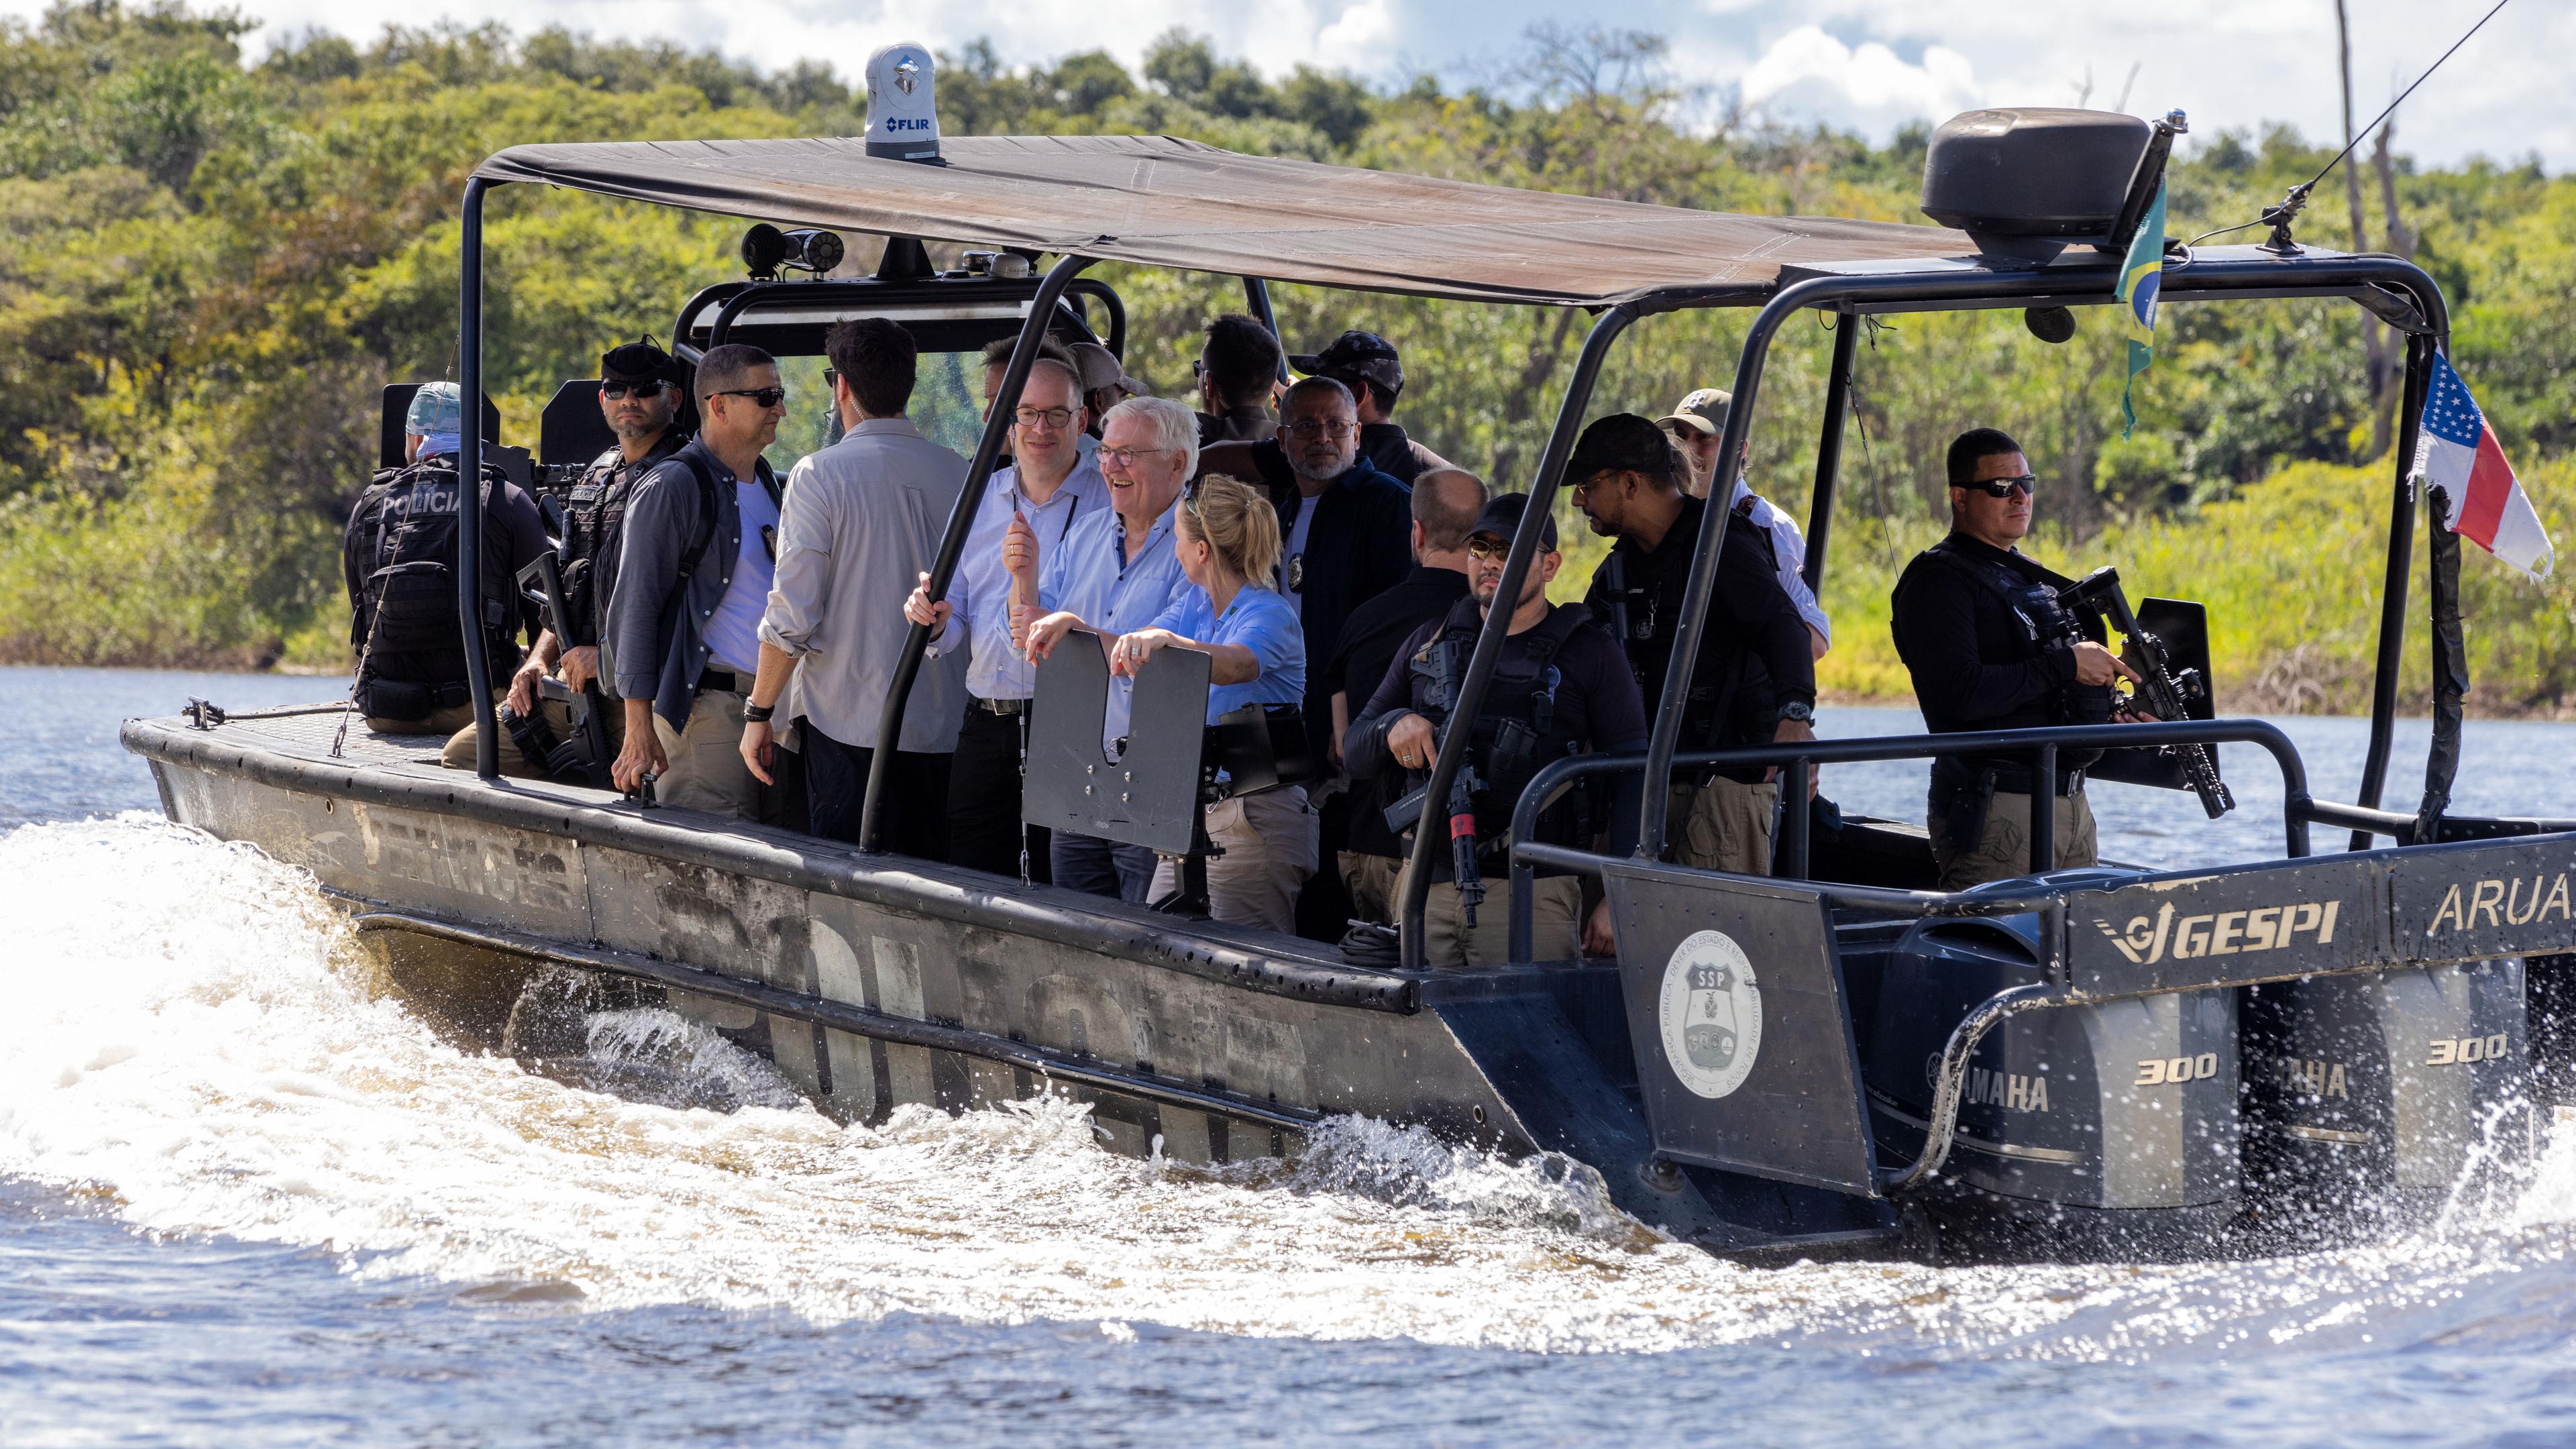 Bundespräsident Frank-Walter Steinmeier fährt mit Mitgliedern seiner Delegation mit einem Boot auf einem Fluss durch den Regenwald.